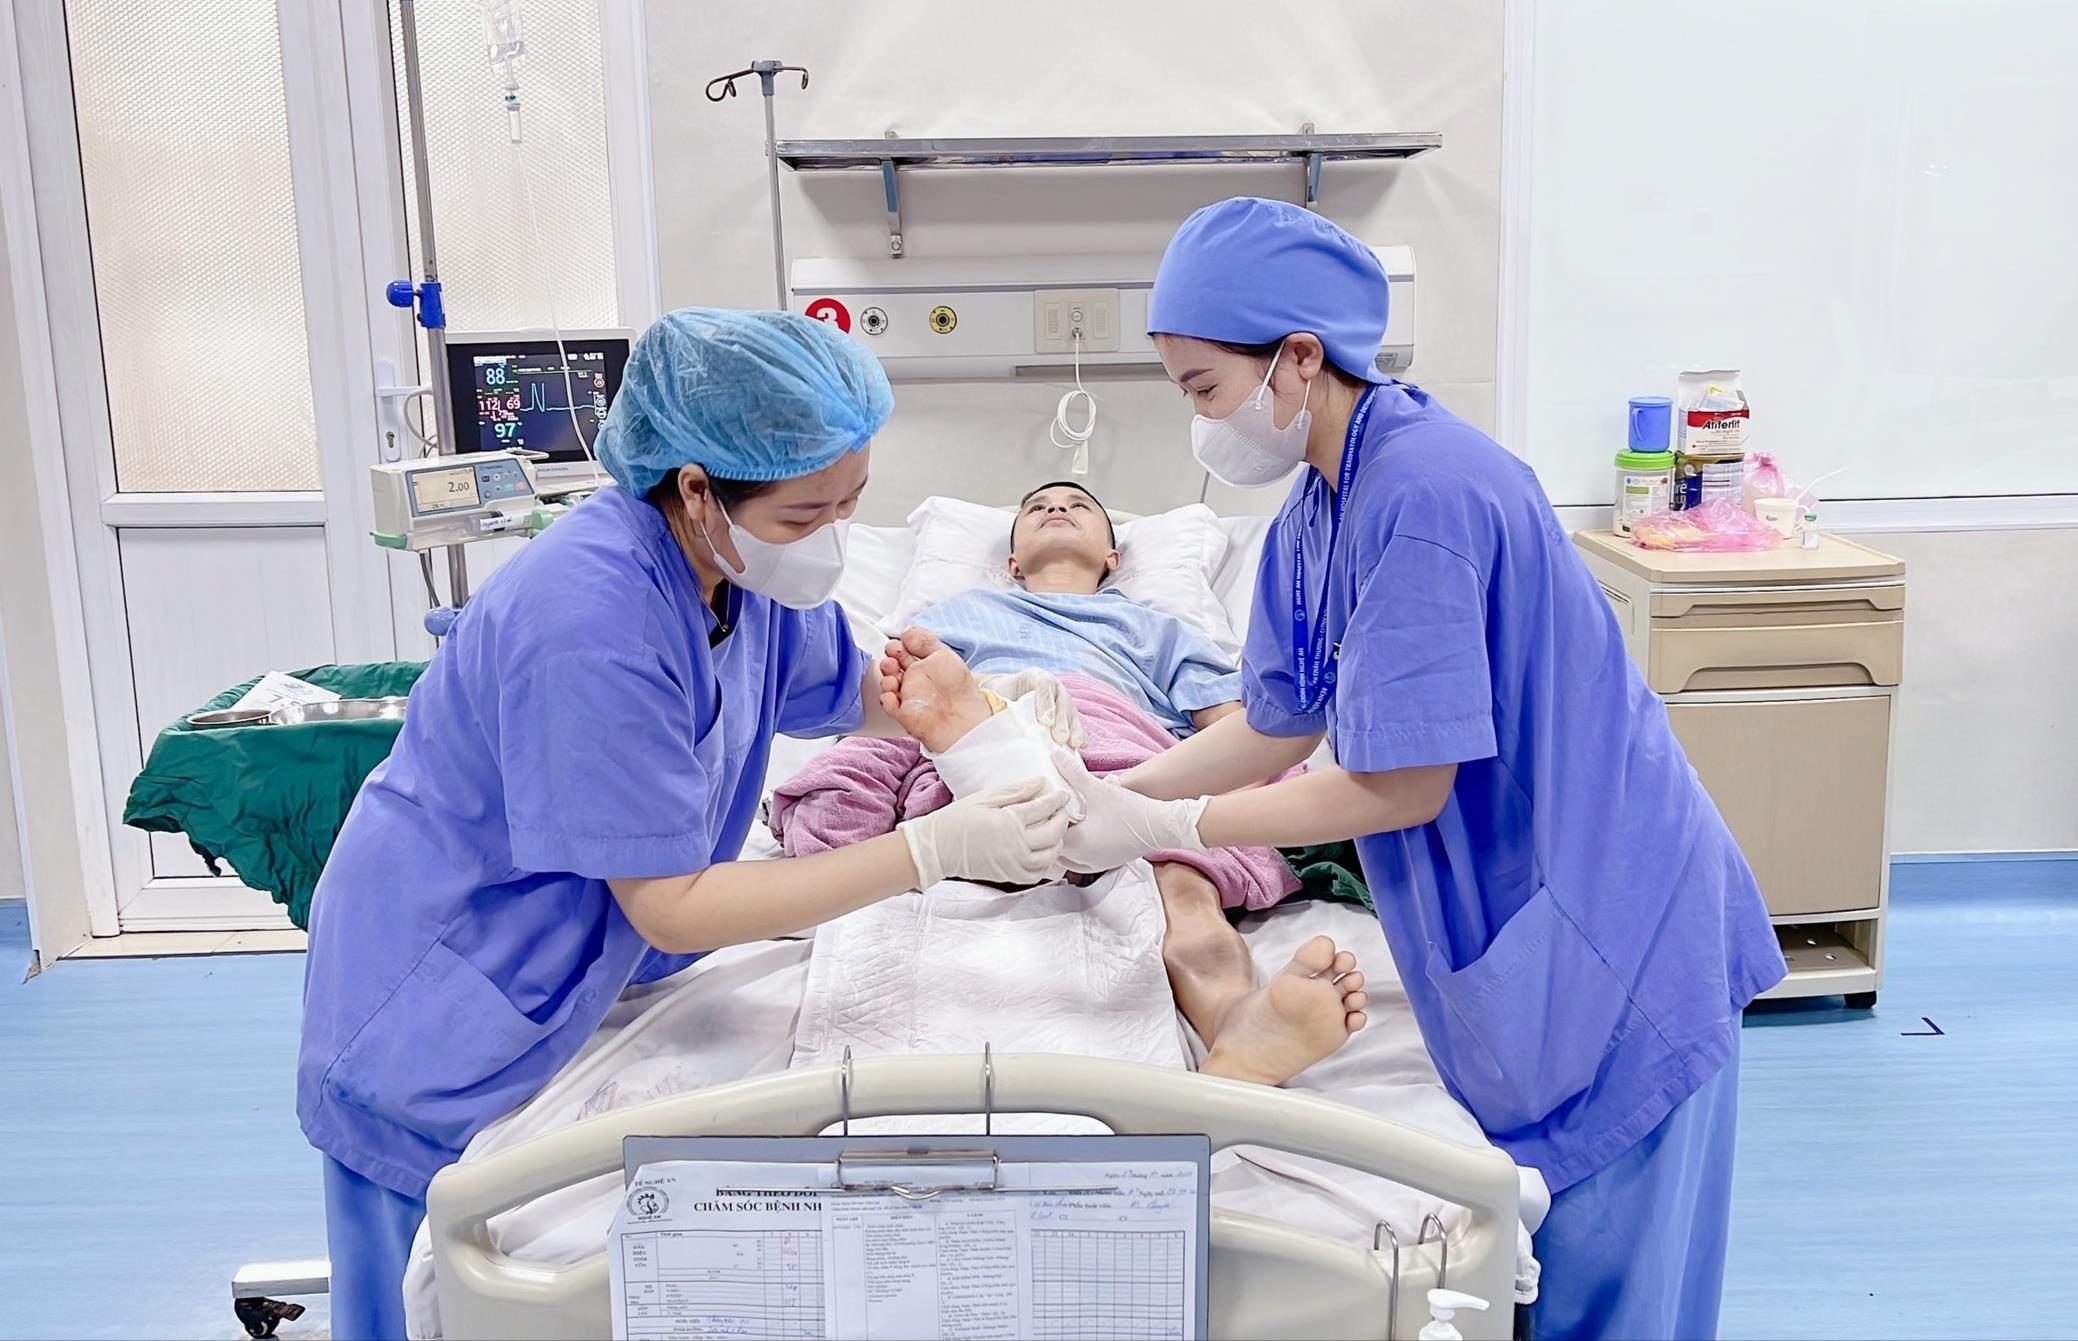 Bệnh viện Chấn thương – Chỉnh hình Nghệ An nối thành công cổ chân bị đứt gần lìa cho người đàn ông 43 tuổi